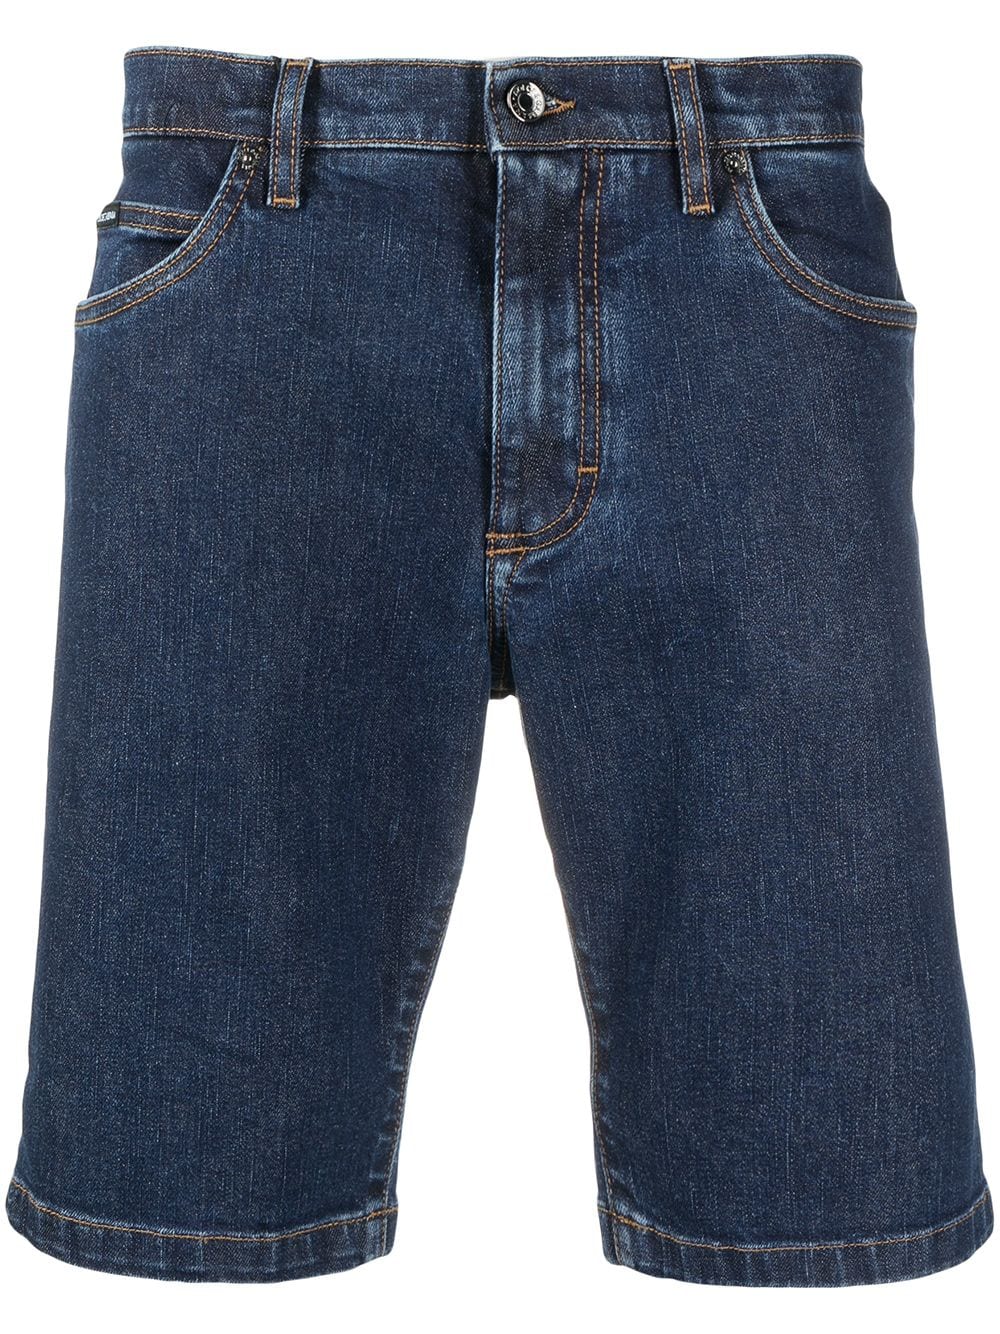 фото Dolce & gabbana джинсовые шорты с нашивкой-логотипом